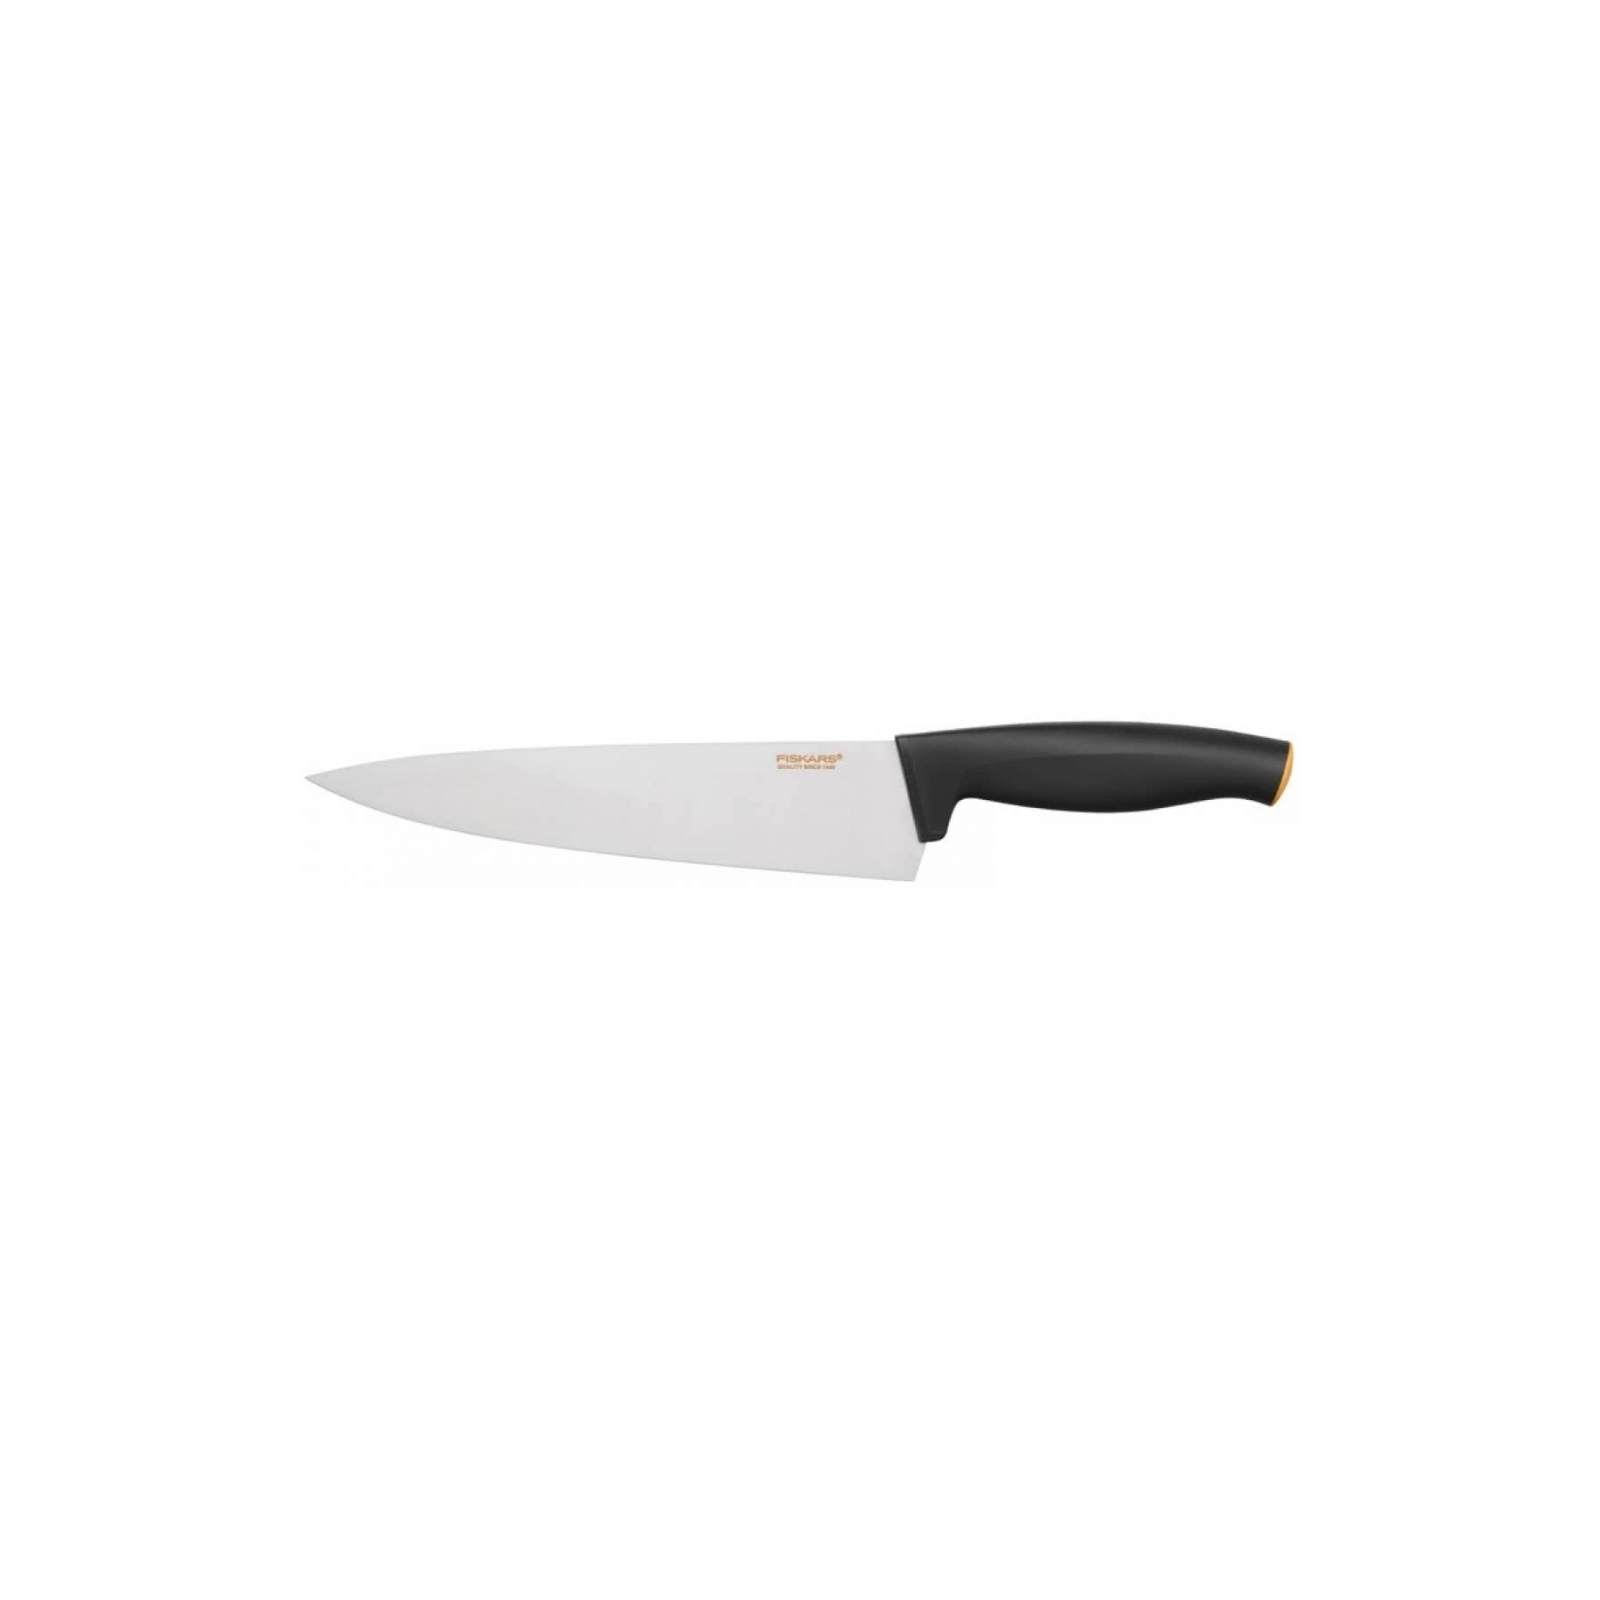 Кухонный нож Fiskars Functional Form поварской 20 см Black (1014194)